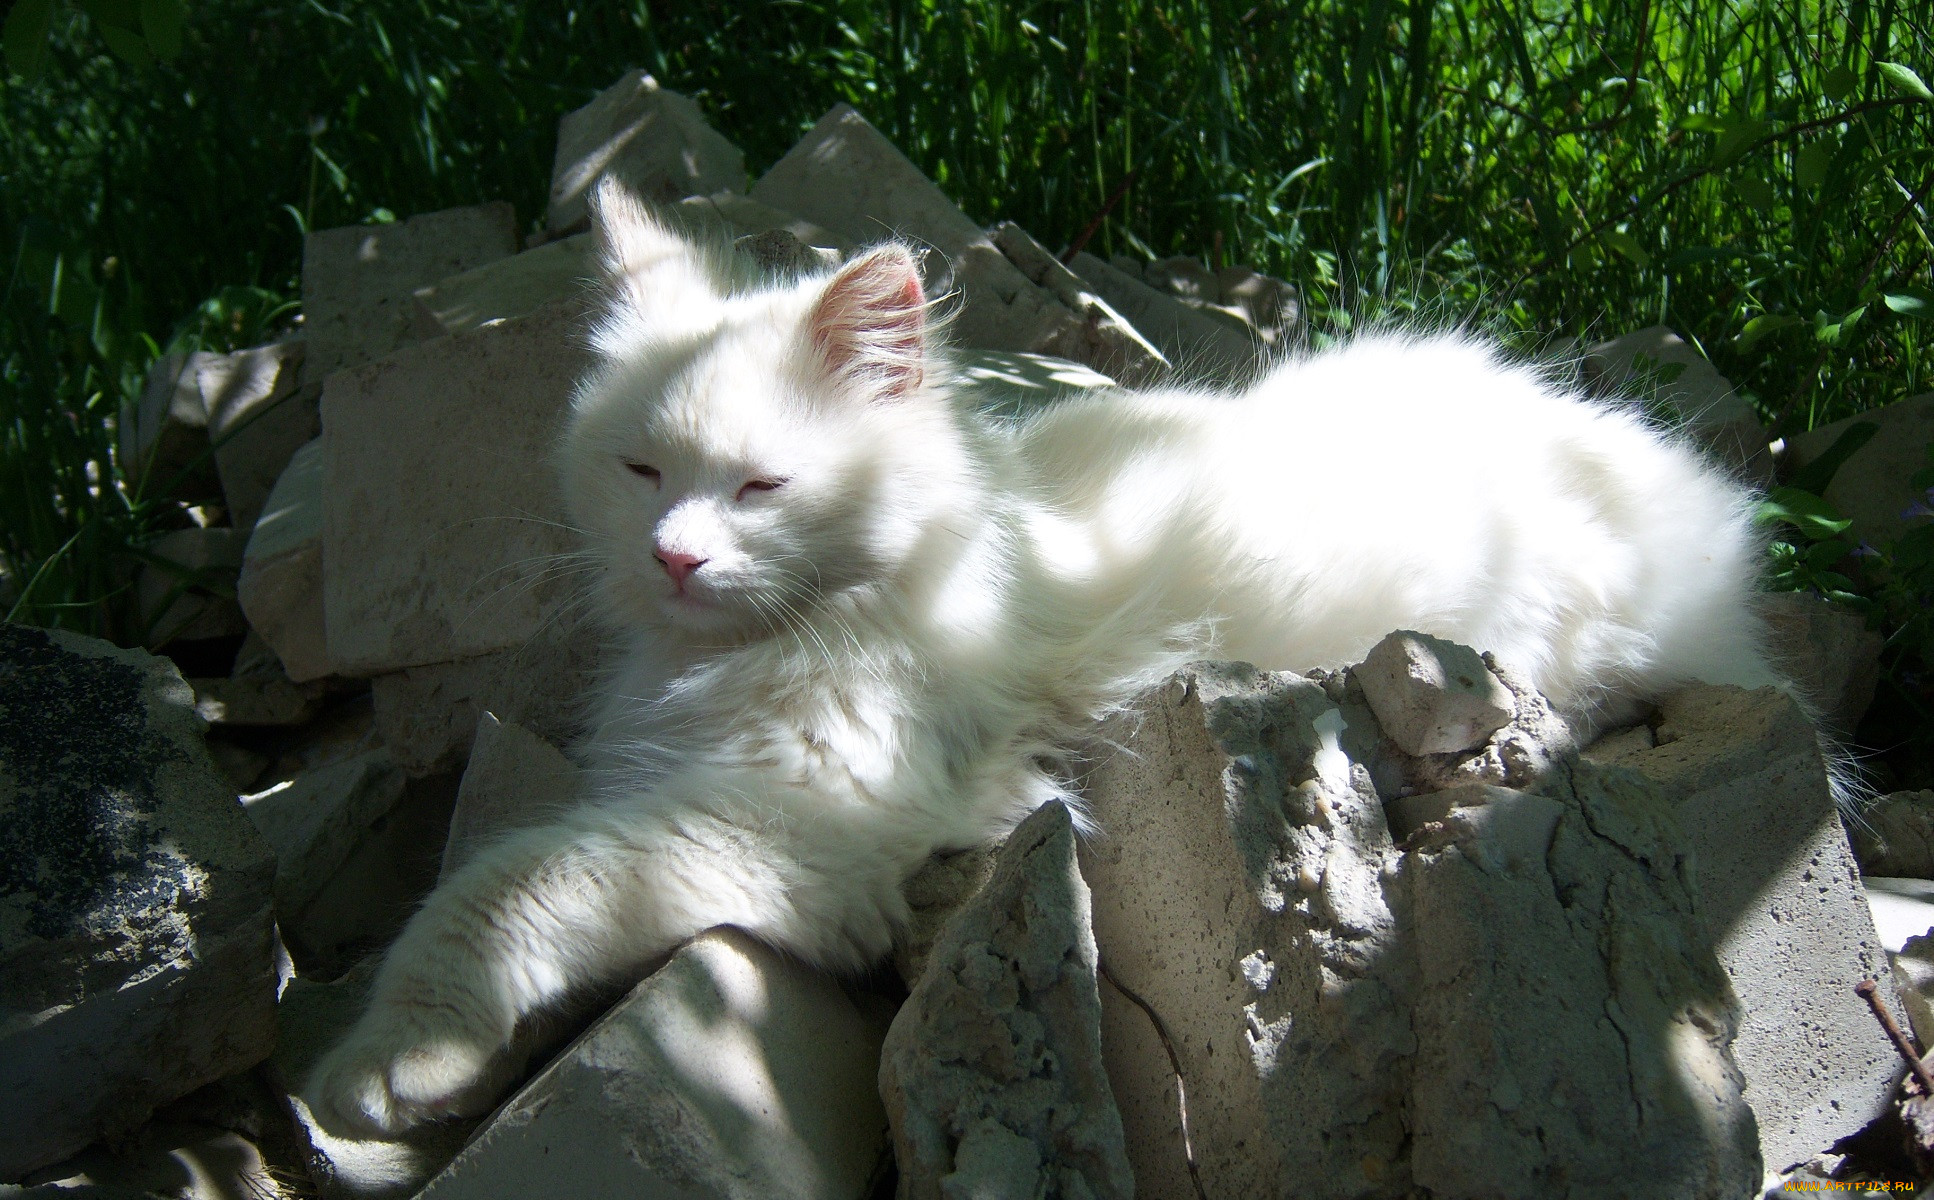 Кот дремот в реальной жизни. Кот дремот белый. Картик кот дремот. Кот дремот полный белый кот. Белый кот в траве.